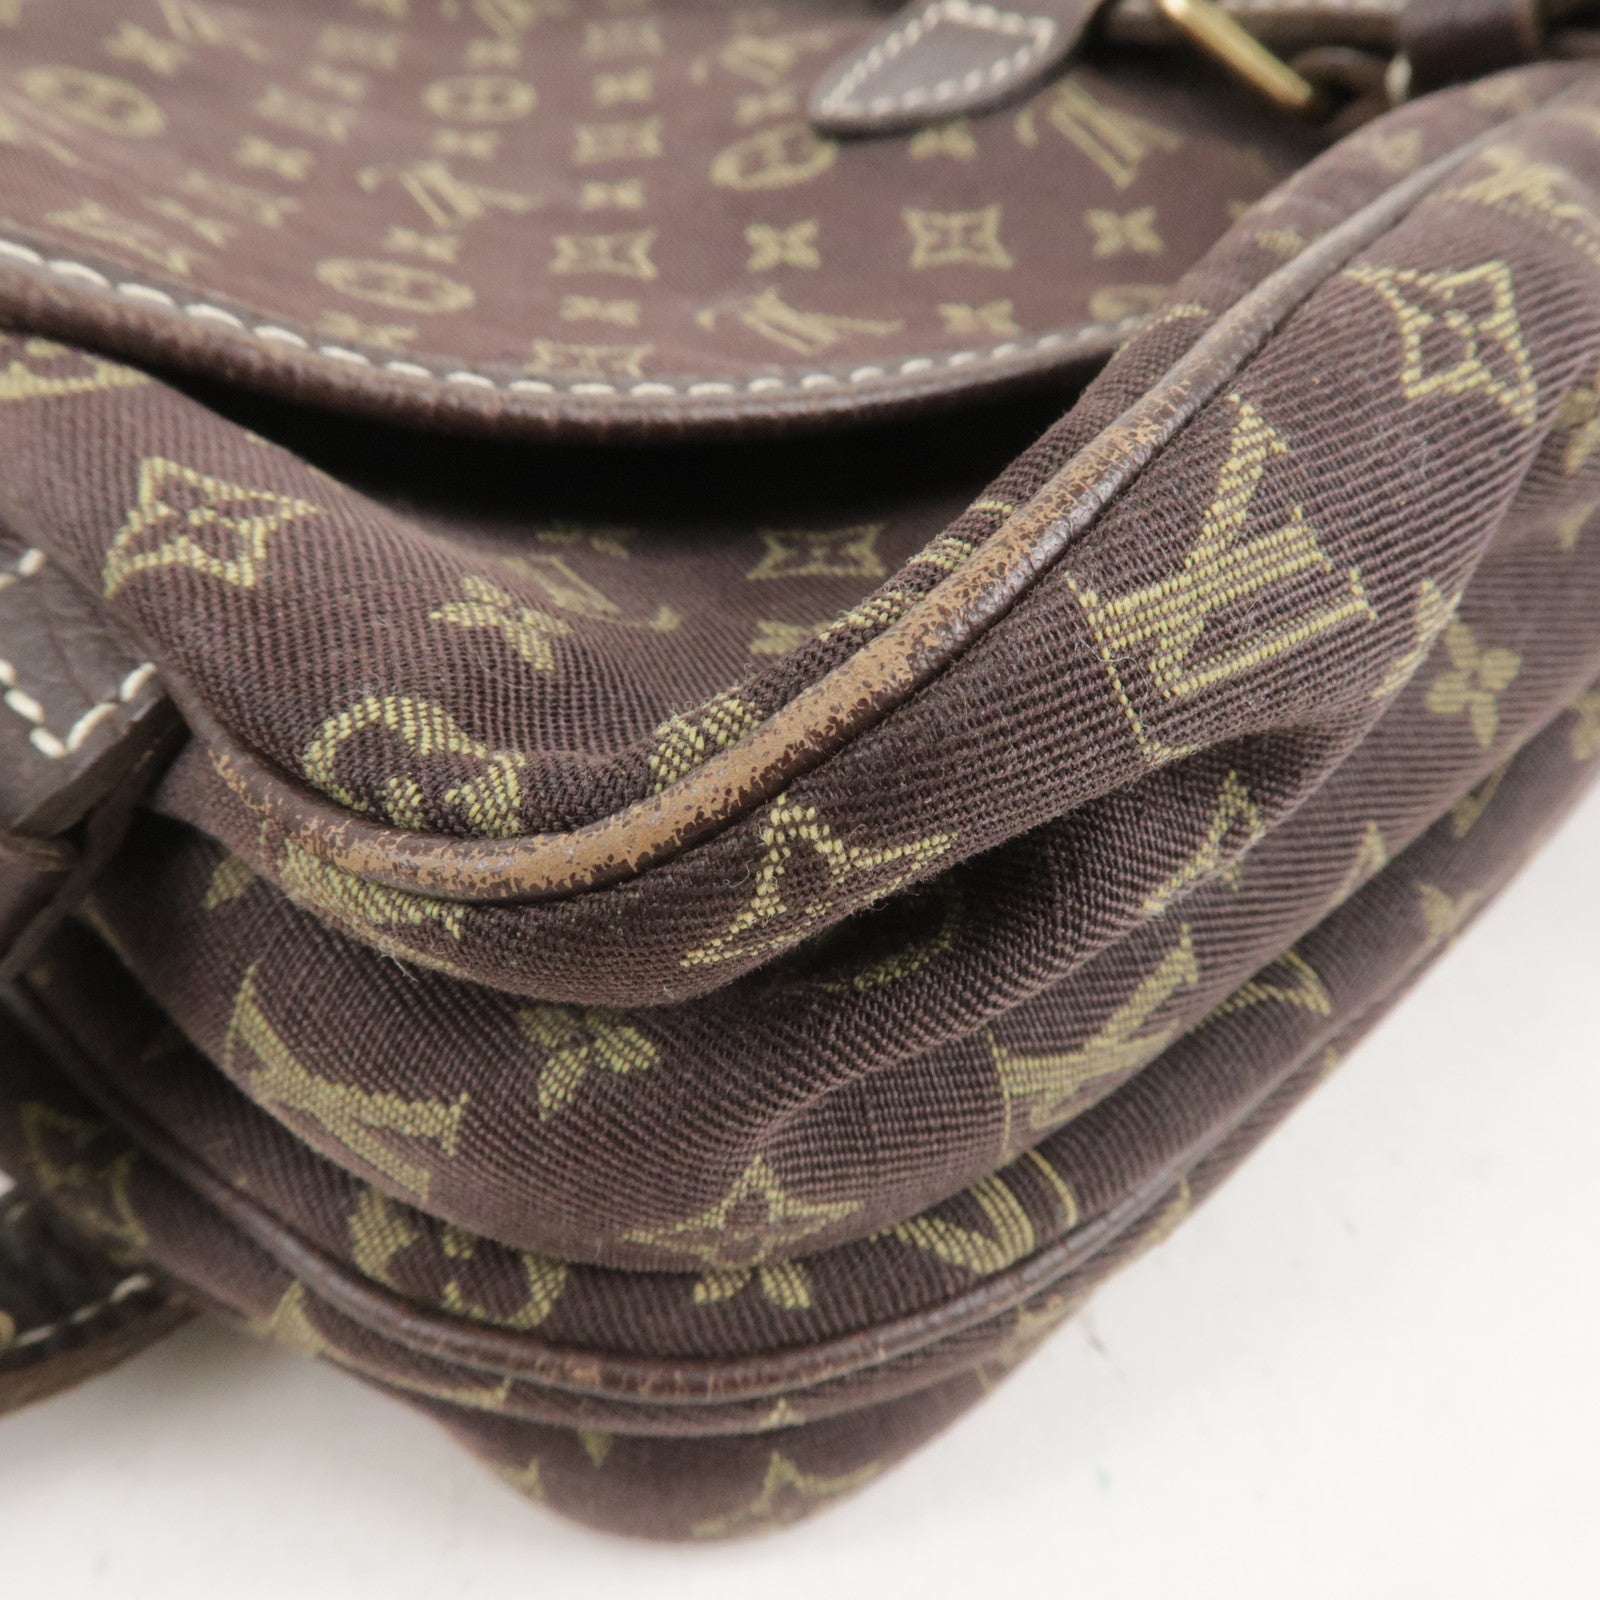 Louis Vuitton Saumur Handbag Mini Lin 30